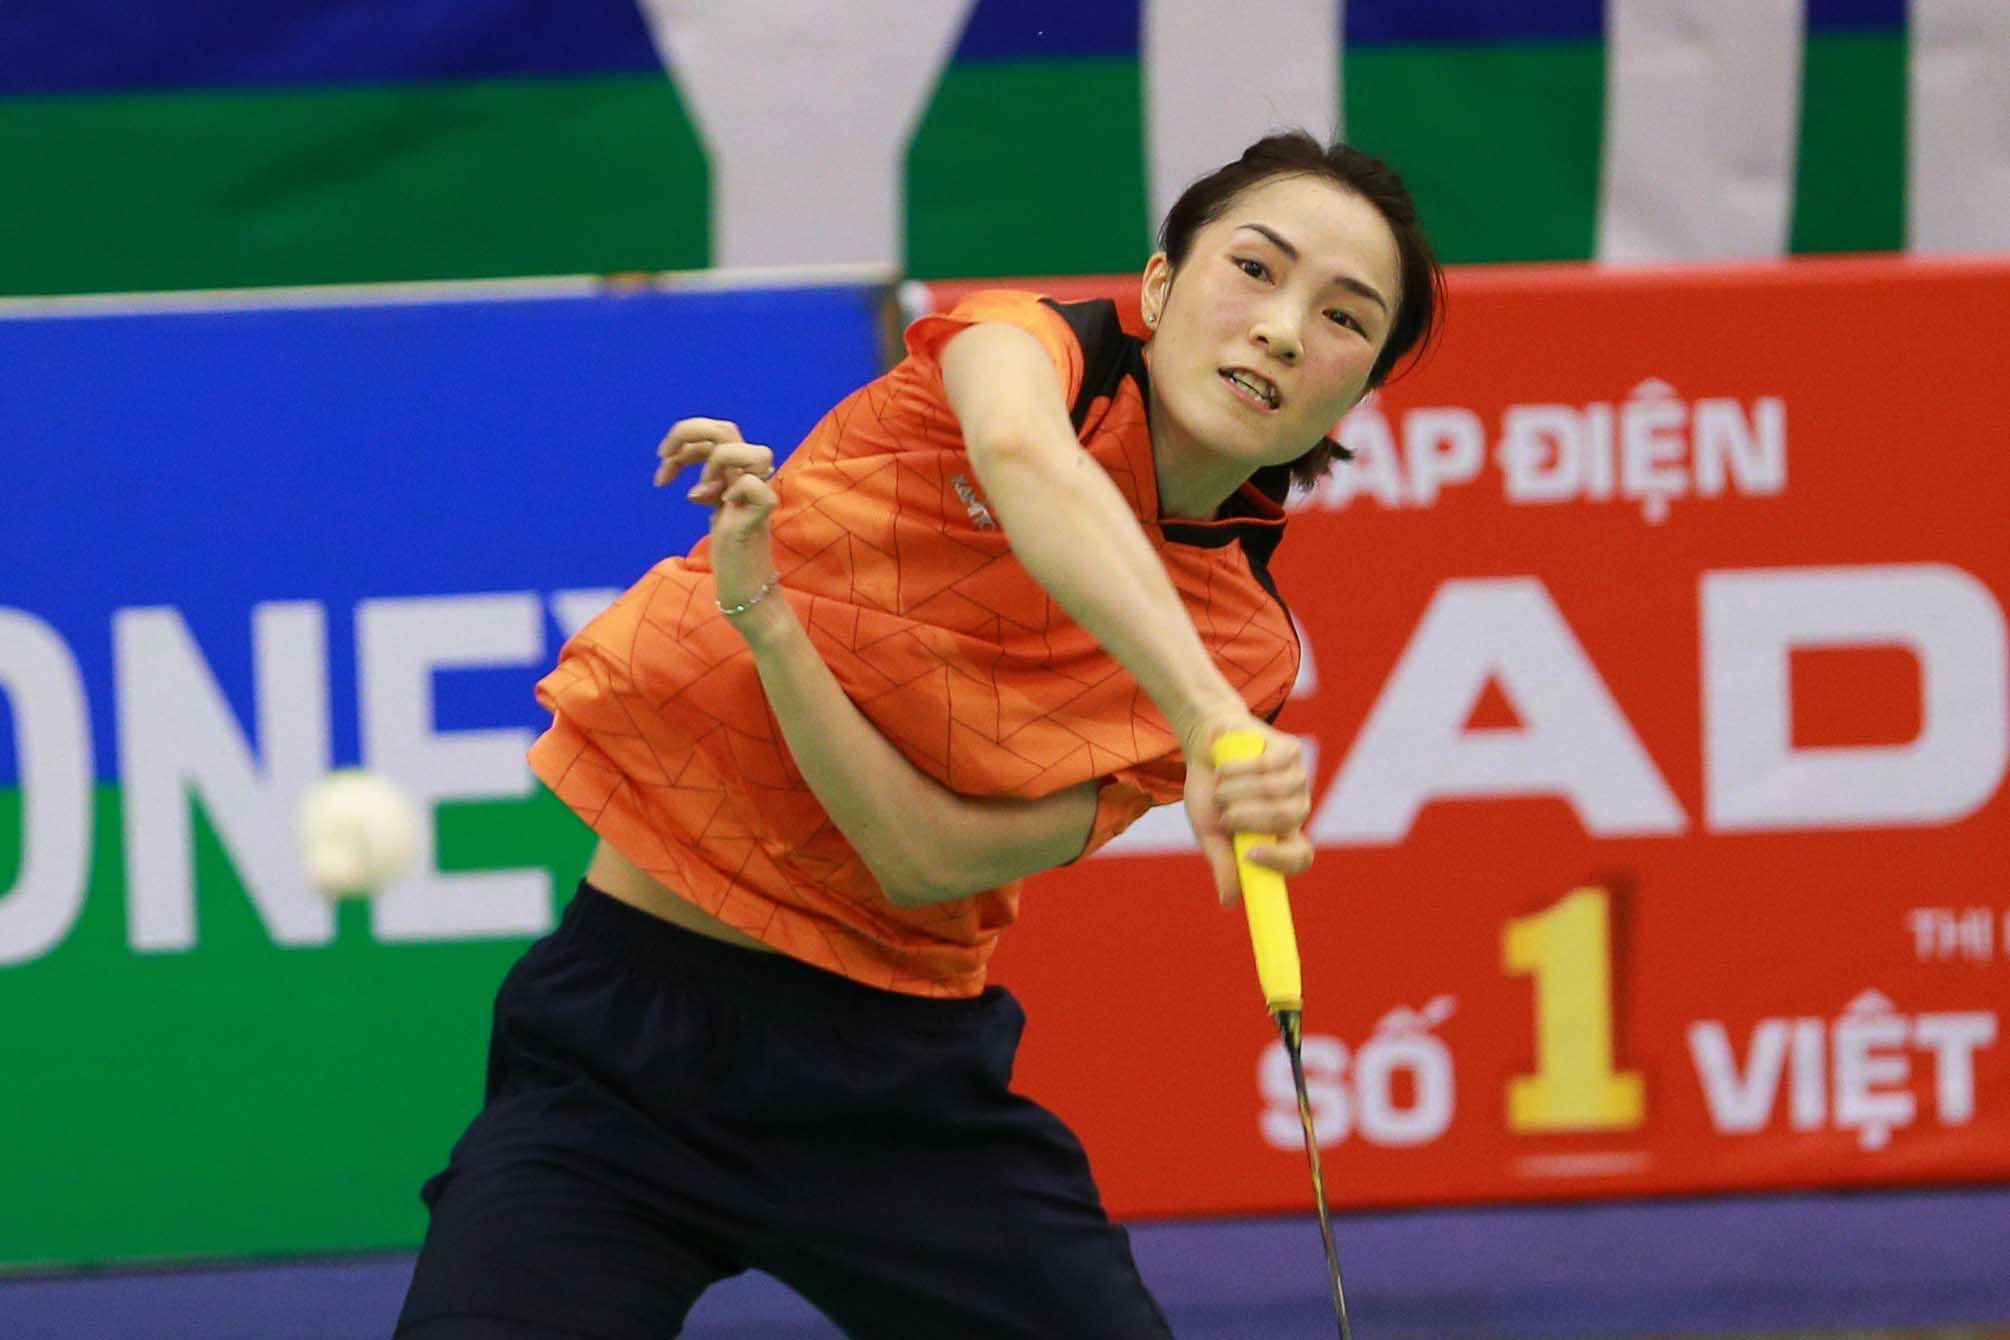 Vũ Thị Trang thi đấu bùng nổ trong set 1 và giành chiến thắng set đấu này với tỉ số 21-16.